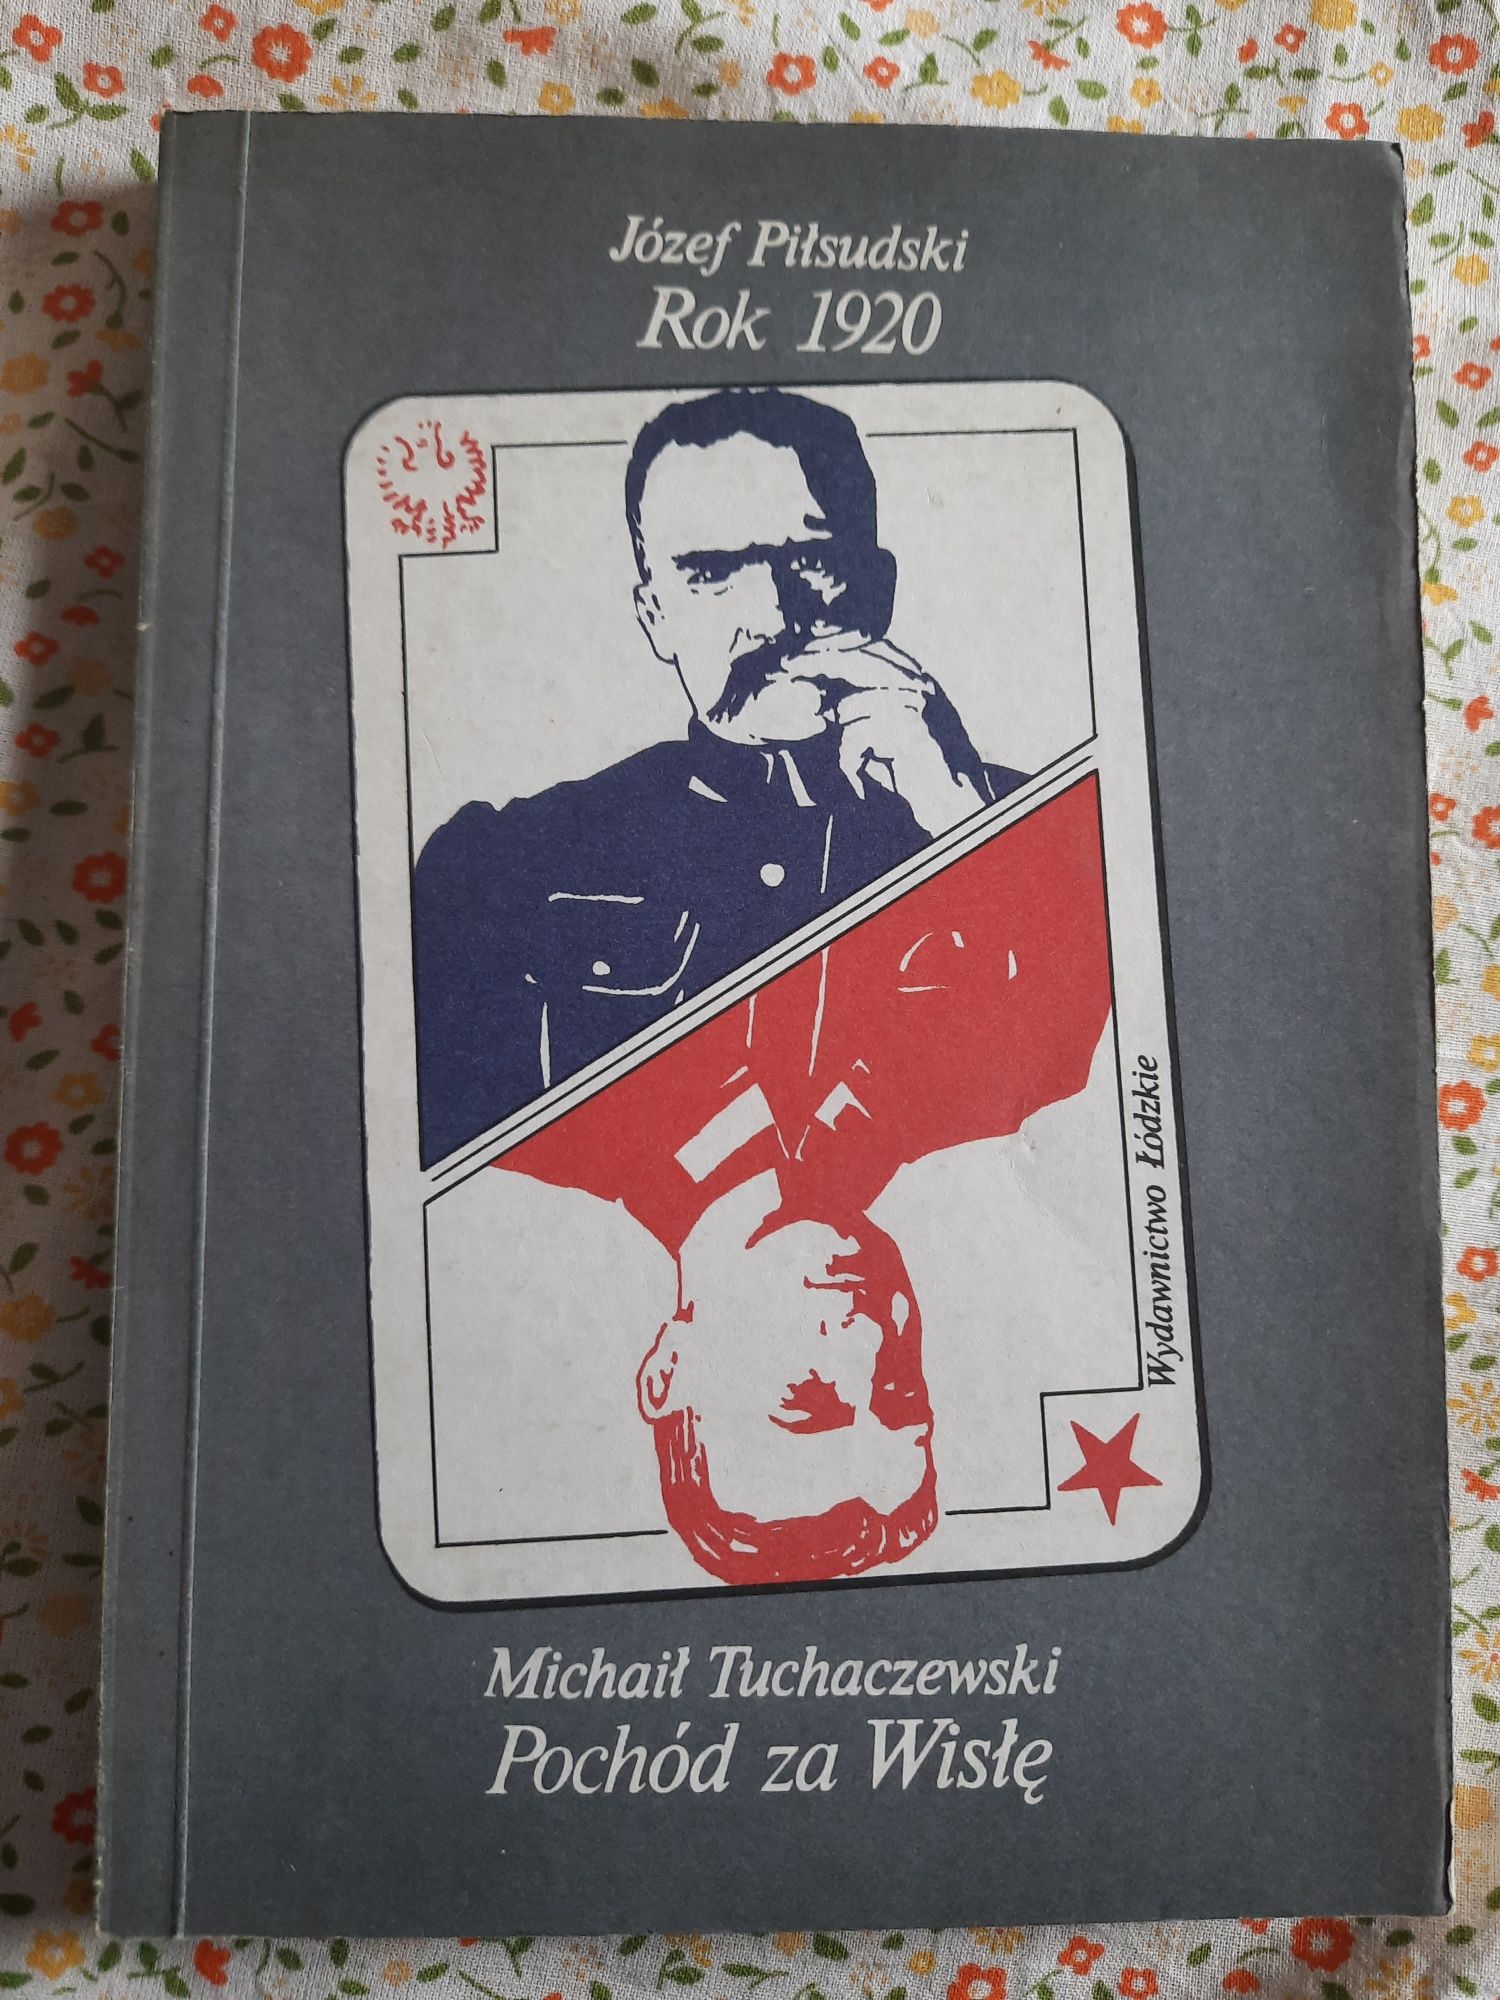 "Rok 1920" Józef Piłsudski, "Pochód za Wisłę" Michaił Tuchaczewski